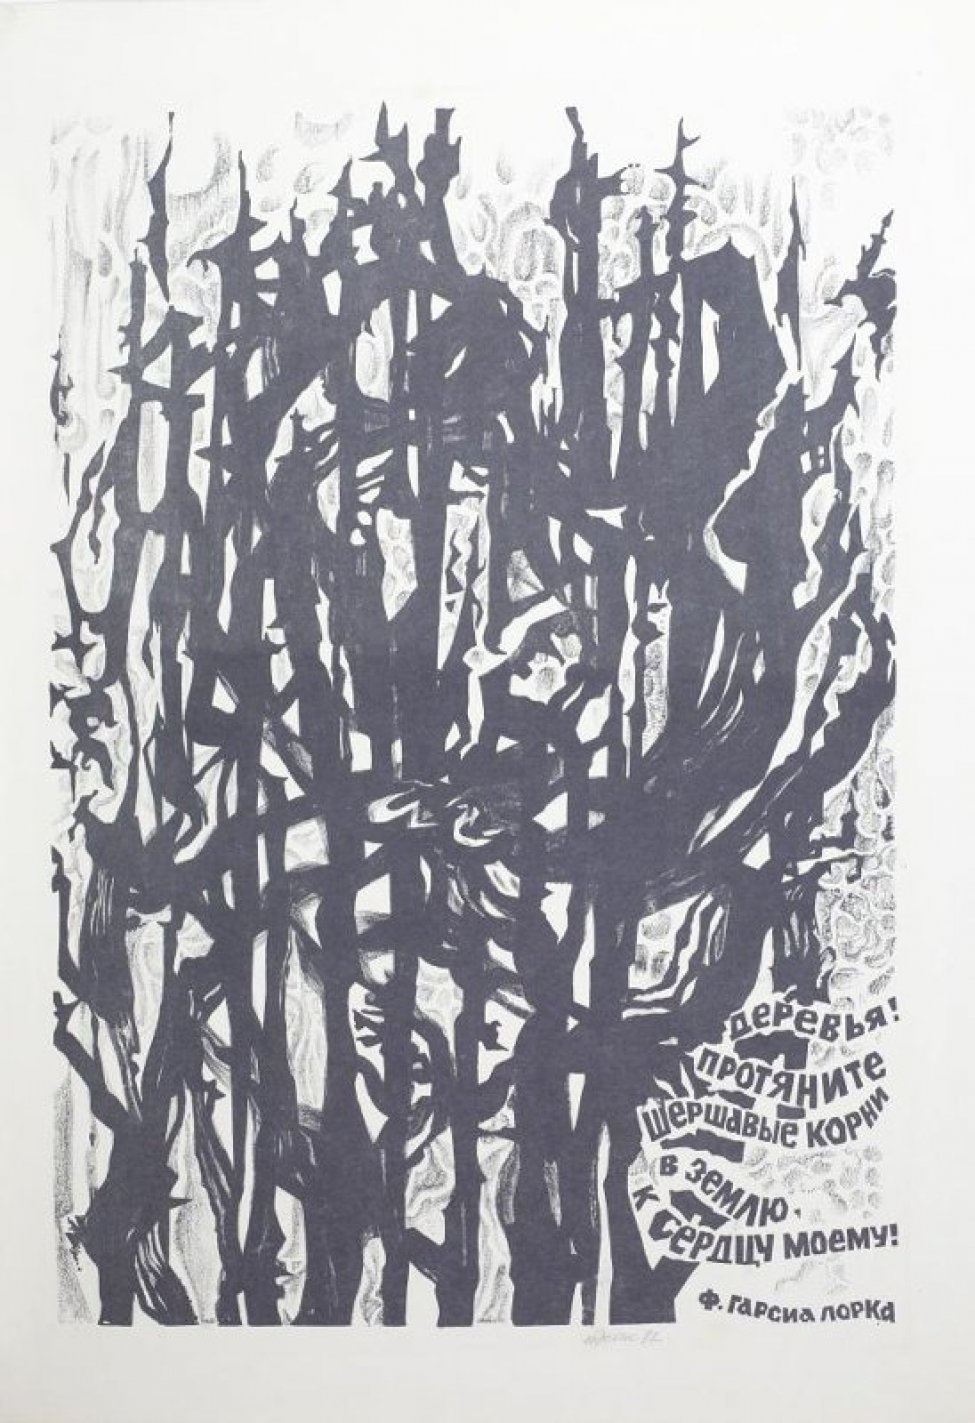 Изображены стилизованно исполненные переплетающиеся  корни деревьев. Внизу справа на изображении - текст: " Деревья! Протяните шершавые корни землю, к сердцу моему! Ф.Гарсиа Лорка".